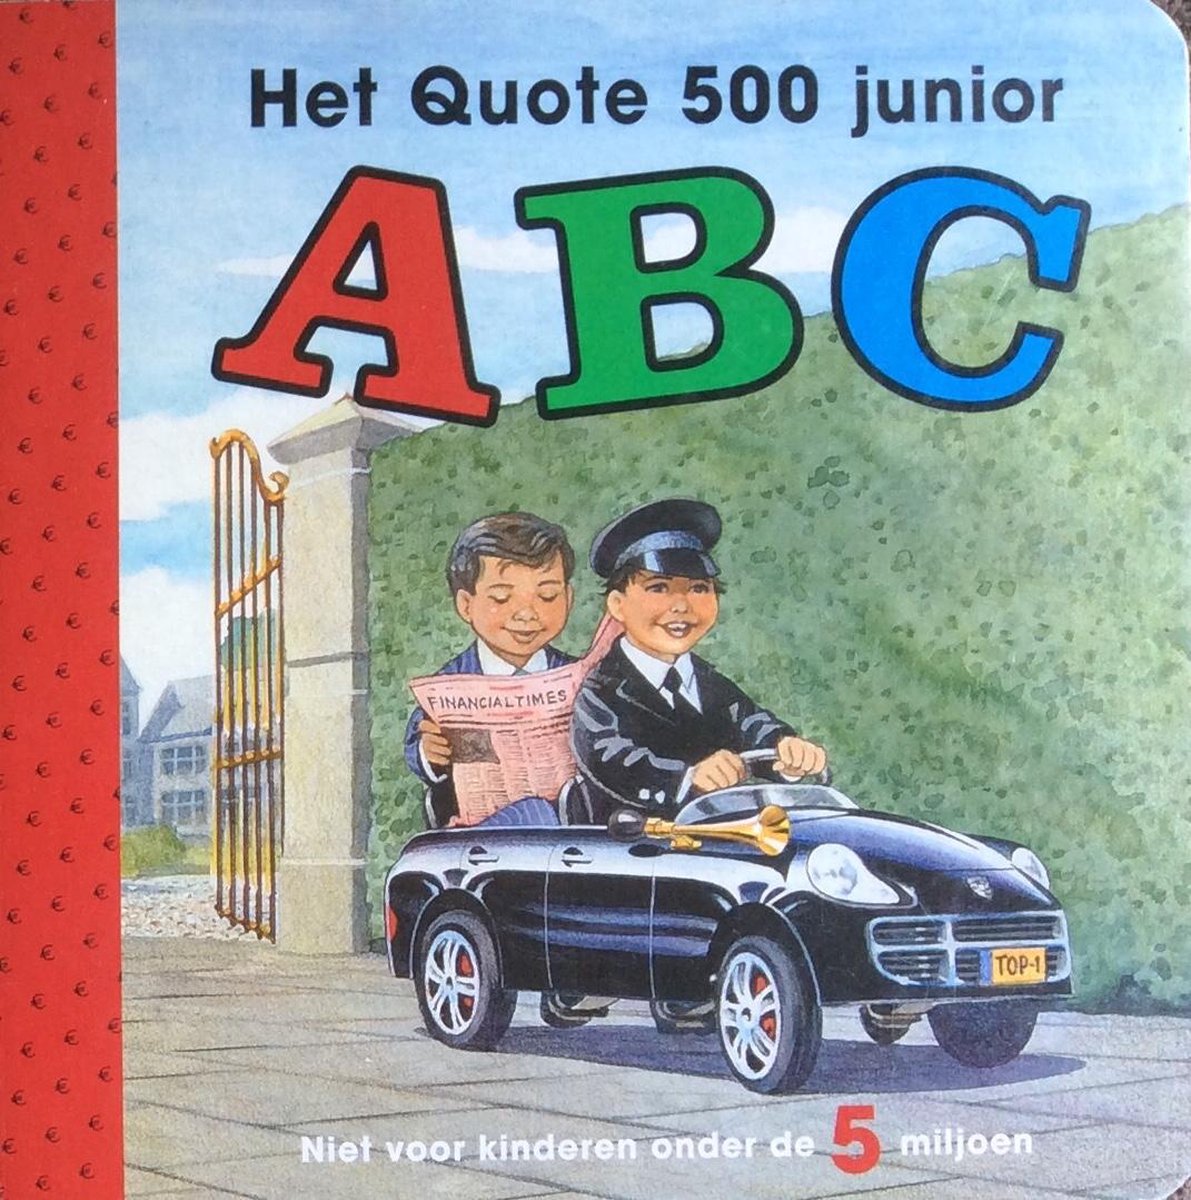 Het Quote 500 junior ABC